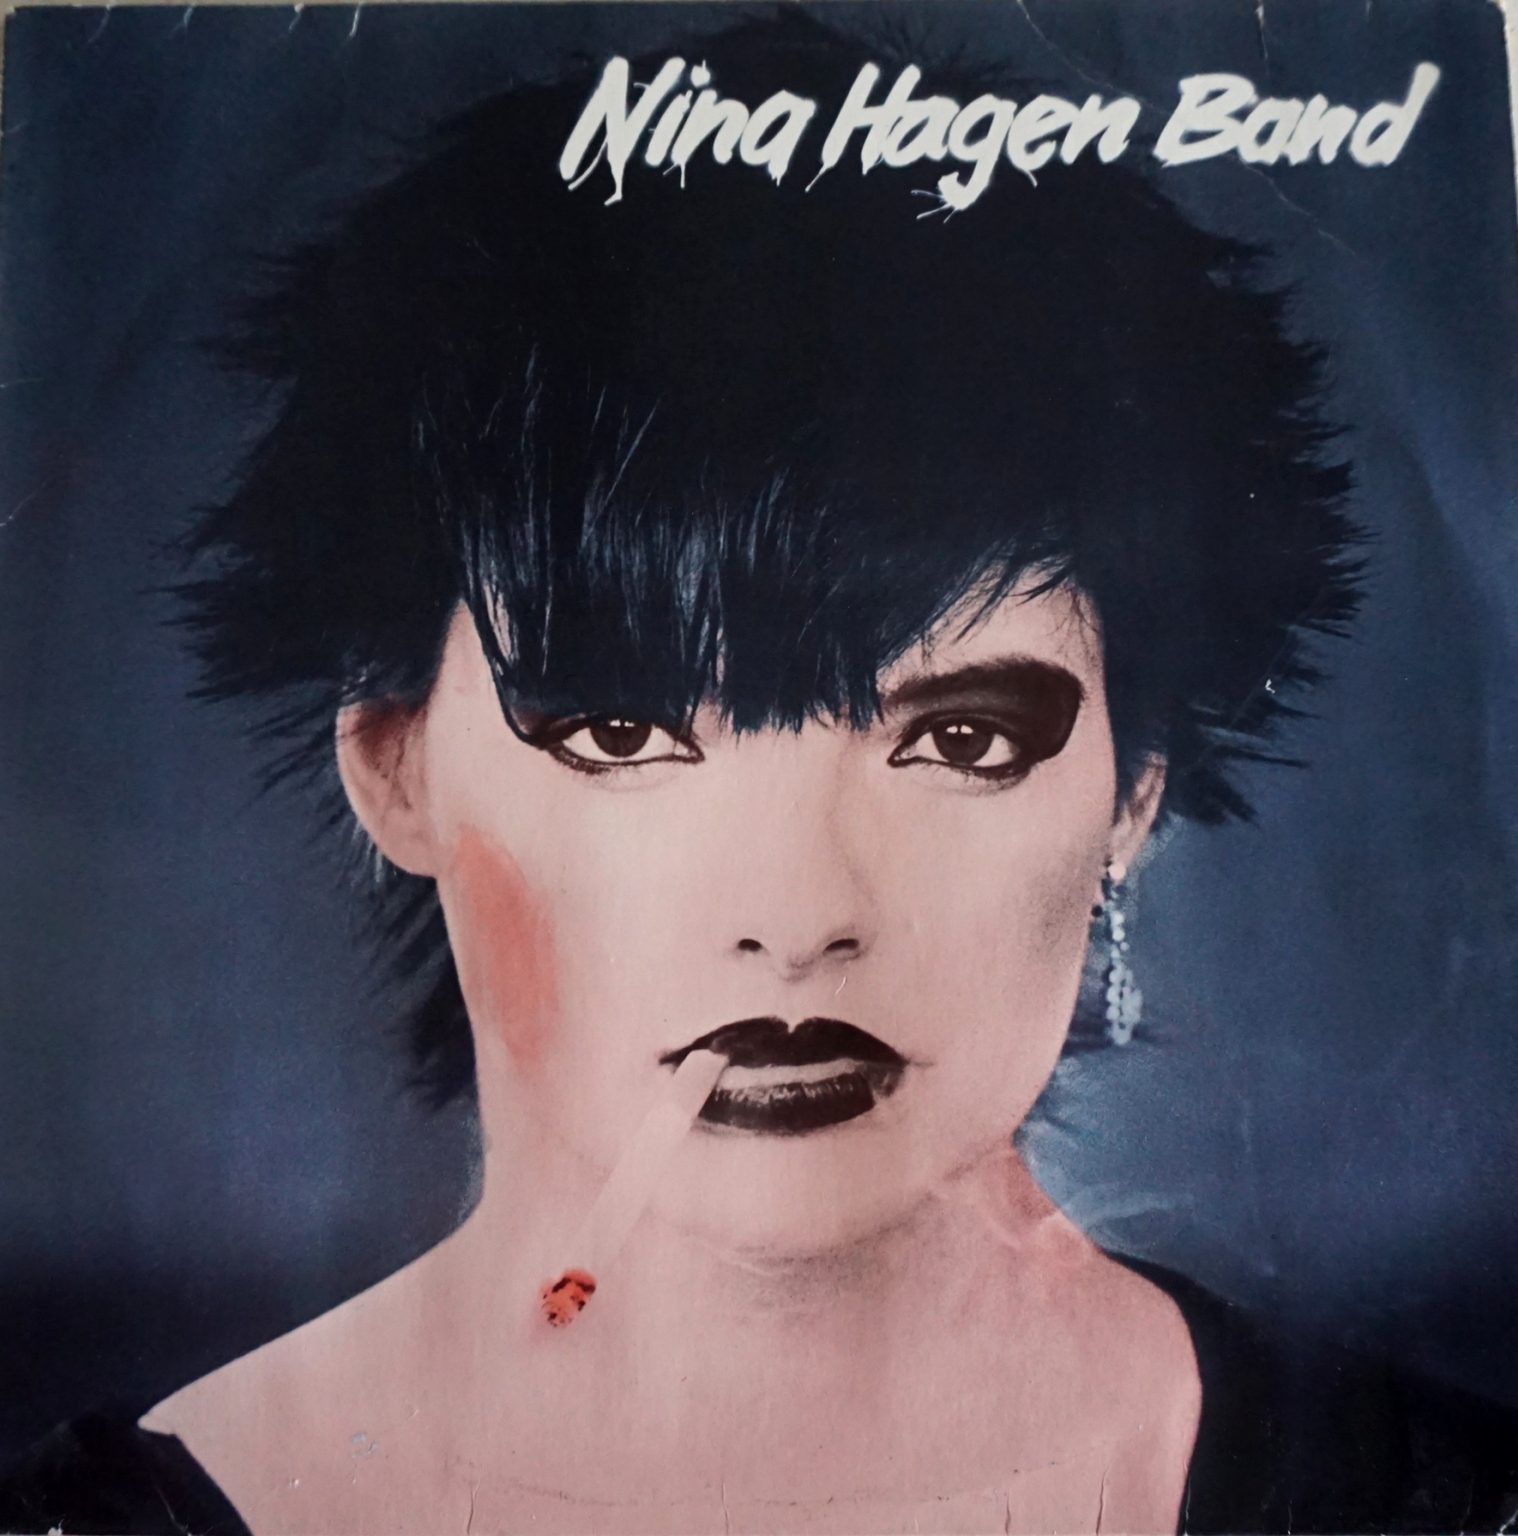 Nina Hagen Band – Nina Hagen Band [Vinyl LP] (VG/VG)